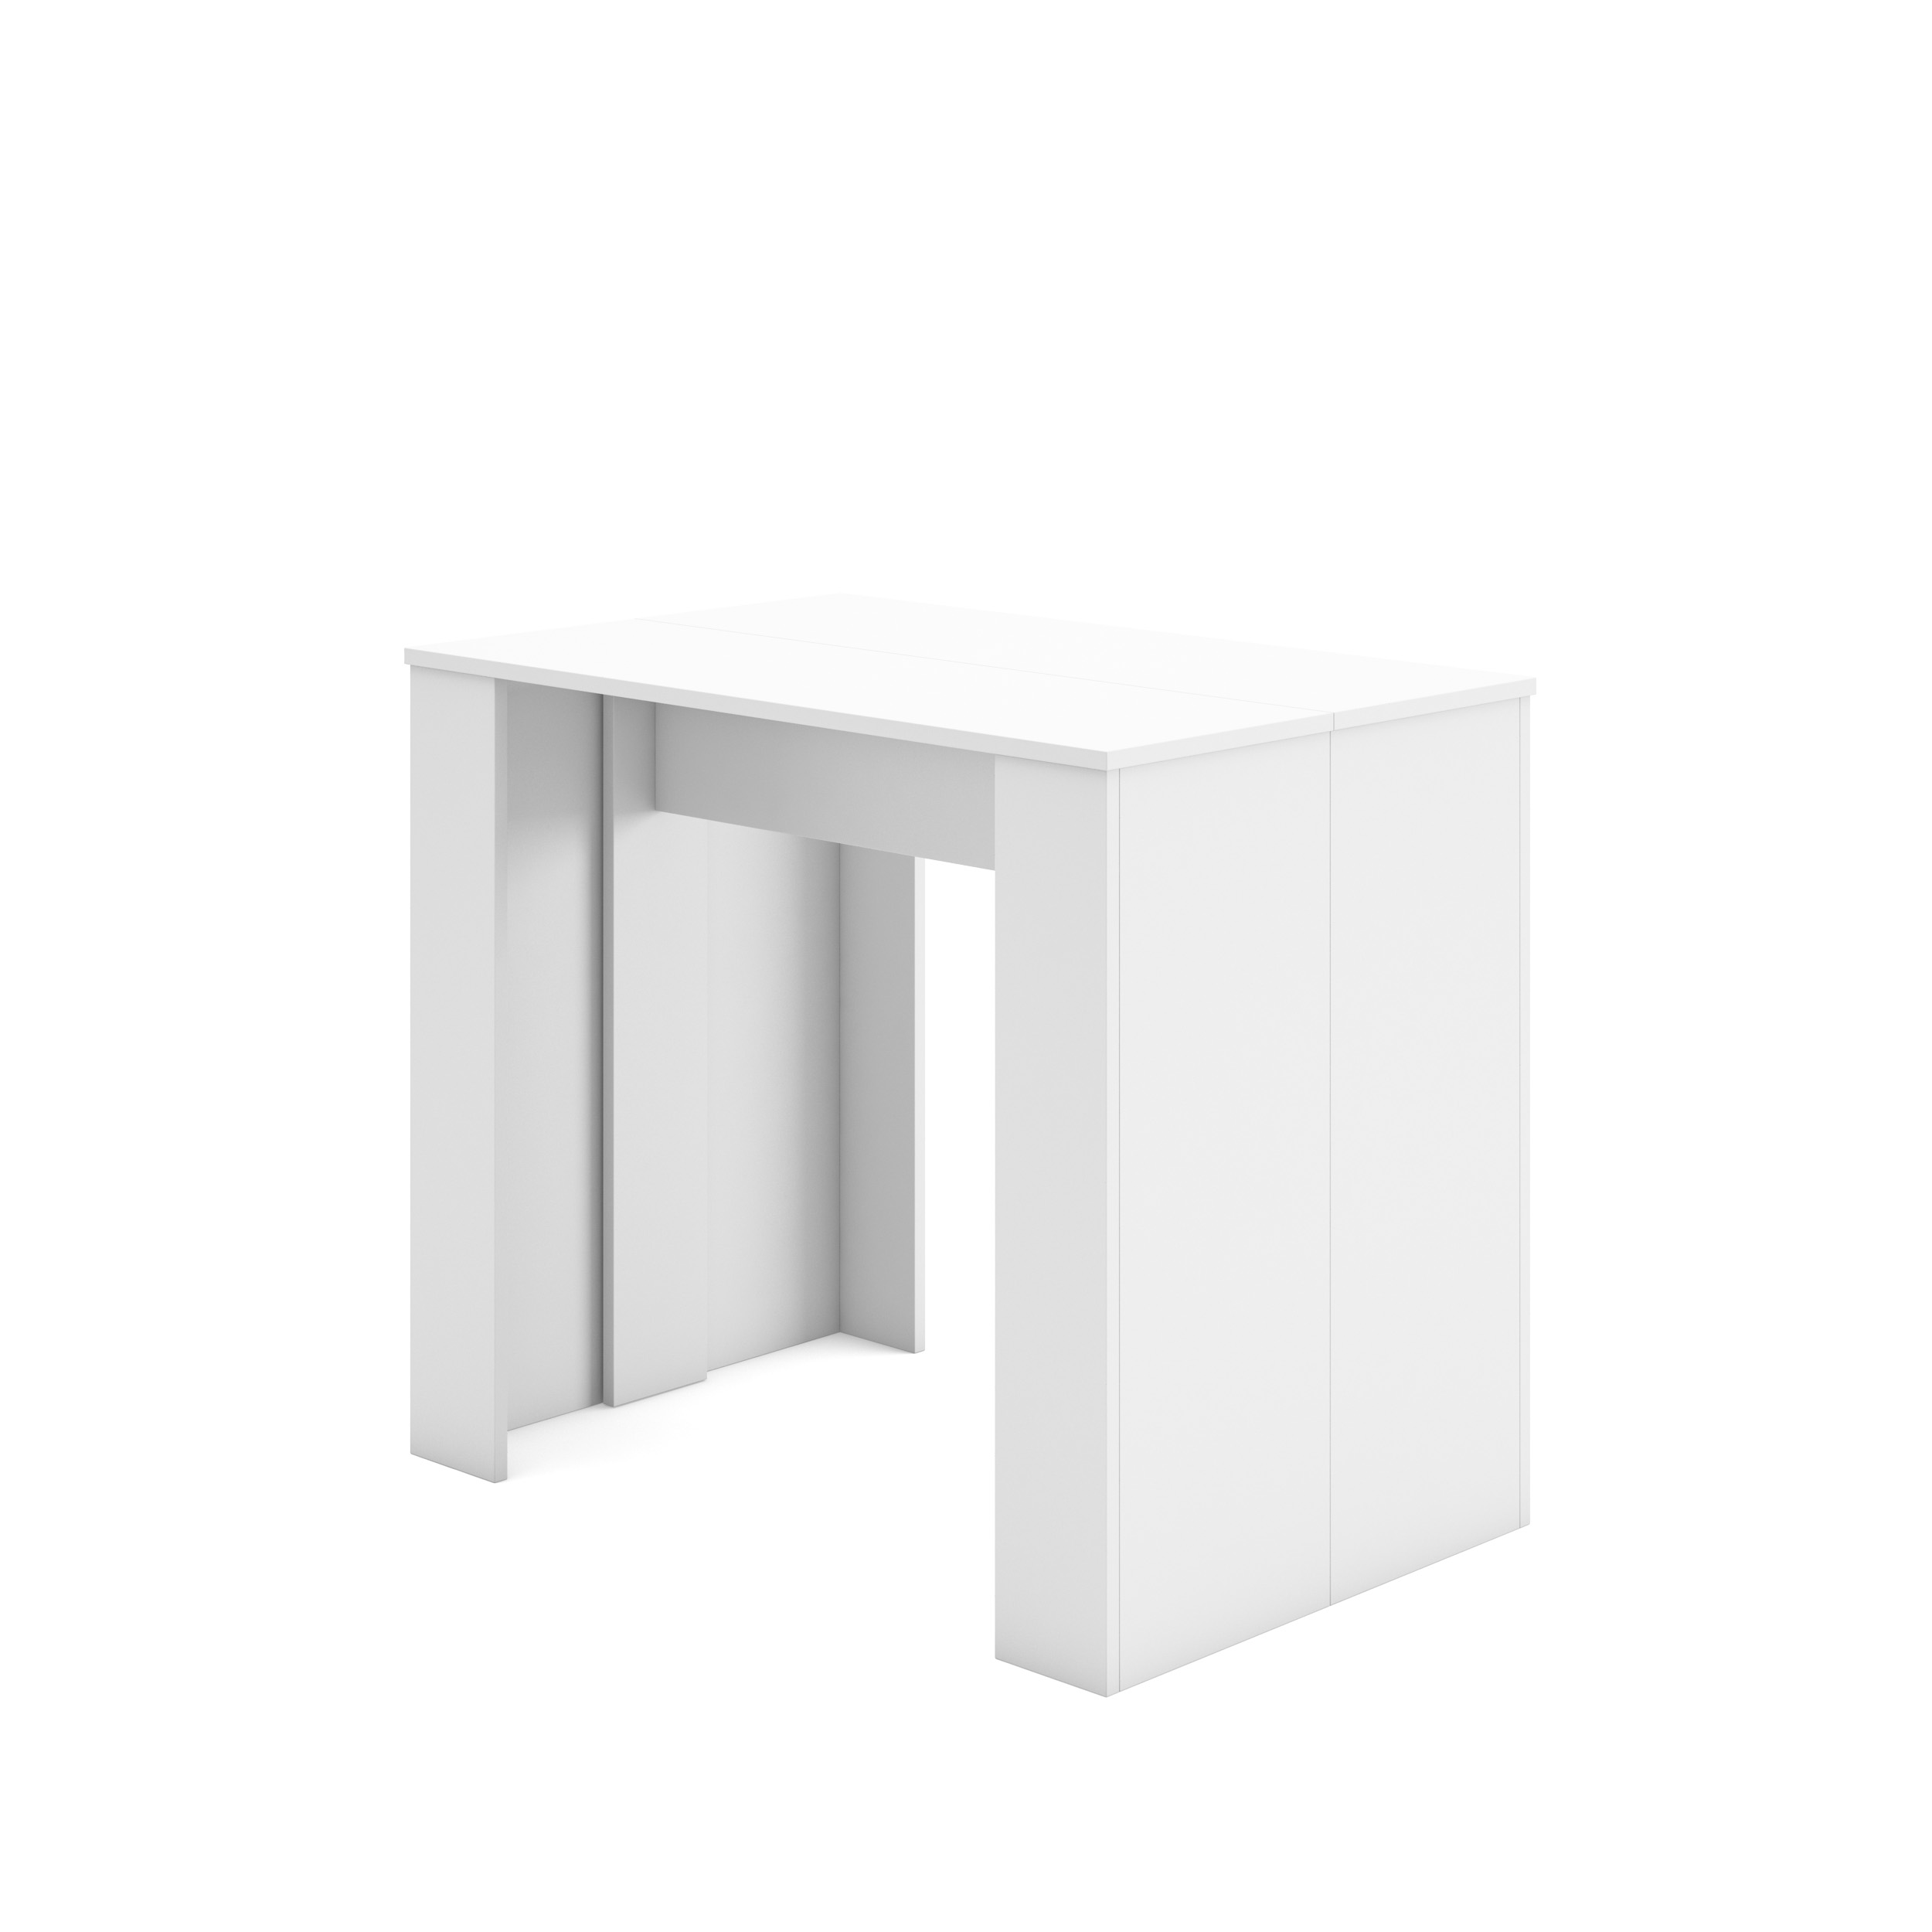 Table Console extensible avec rallonges, jusqu'à 300 cm, Blanc Brillant.